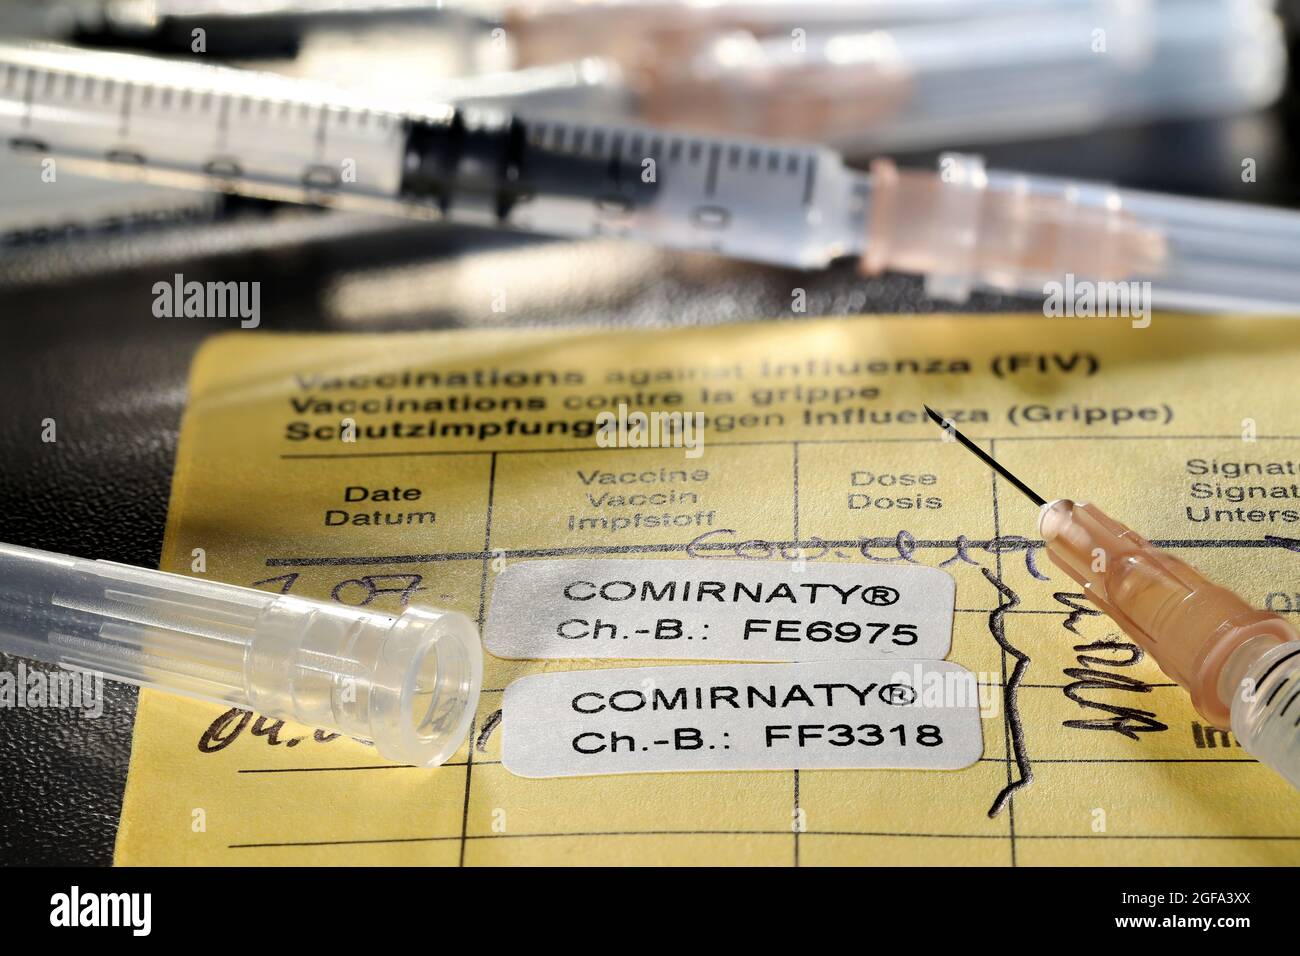 Dokumentation der ersten und zweiten Impfung mit BioNTech/Pfizer COVID-19 Impfstoff Comirnaty in einem internationalen Impfzertifikat. Stockfoto